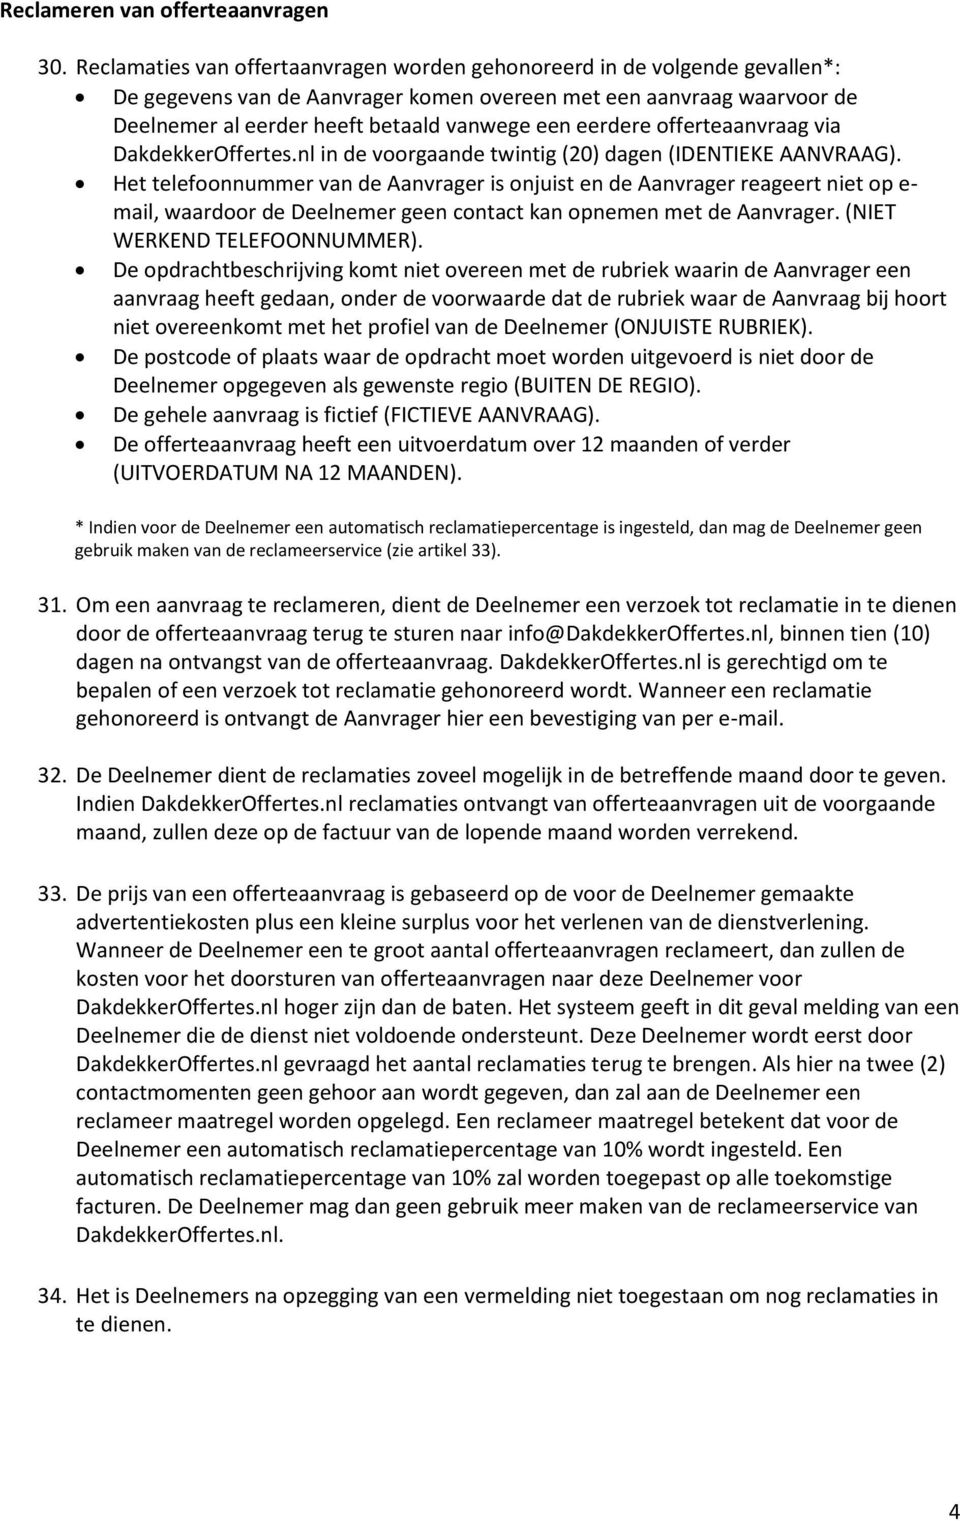 eerdere offerteaanvraag via DakdekkerOffertes.nl in de voorgaande twintig (20) dagen (IDENTIEKE AANVRAAG).